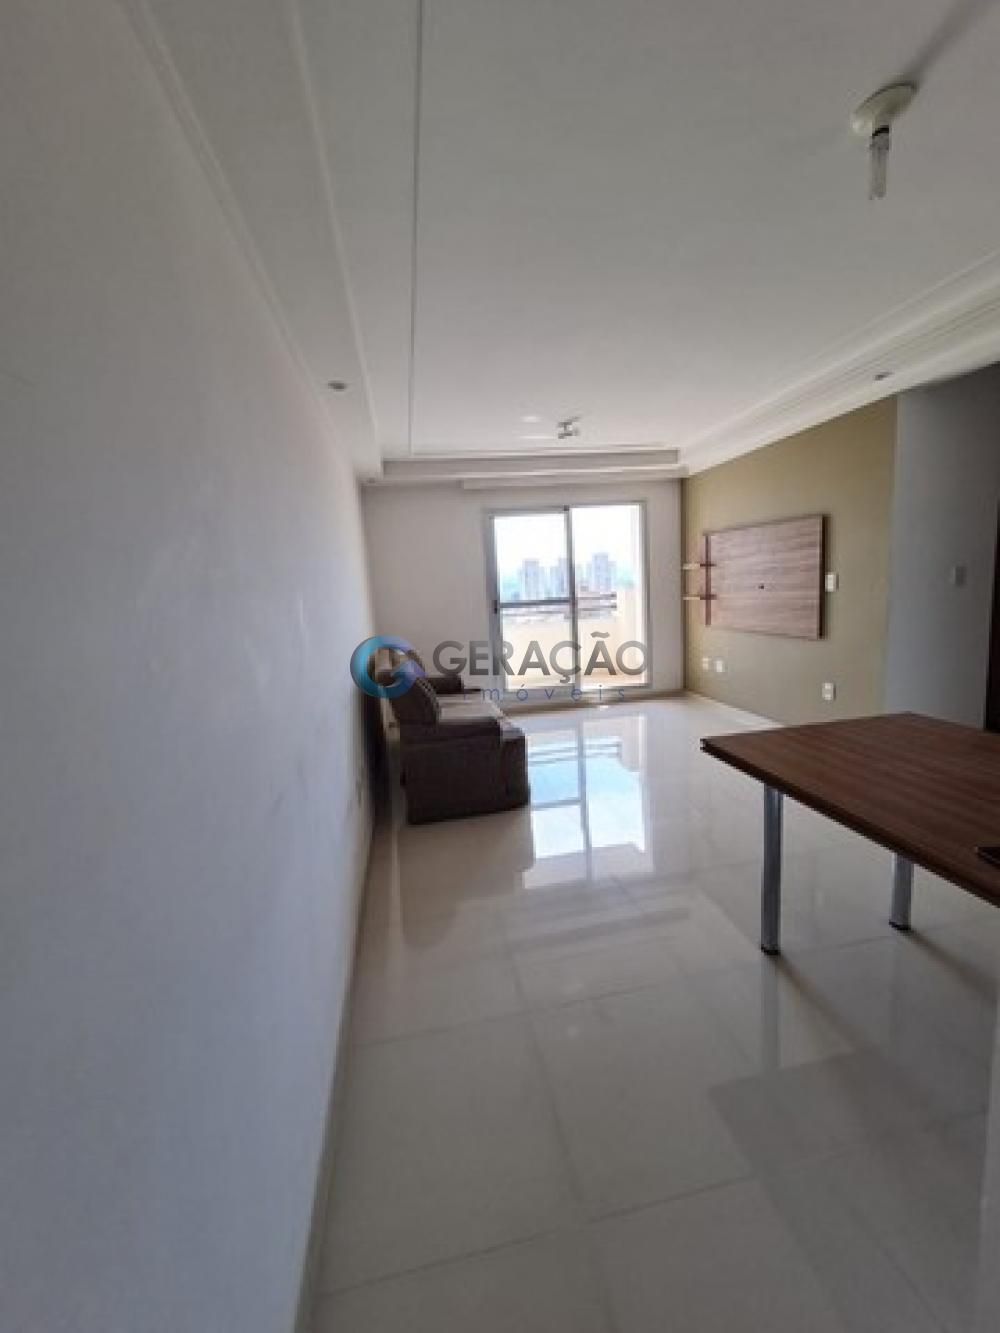 Comprar Apartamento / Padrão em São José dos Campos R$ 447.000,00 - Foto 3